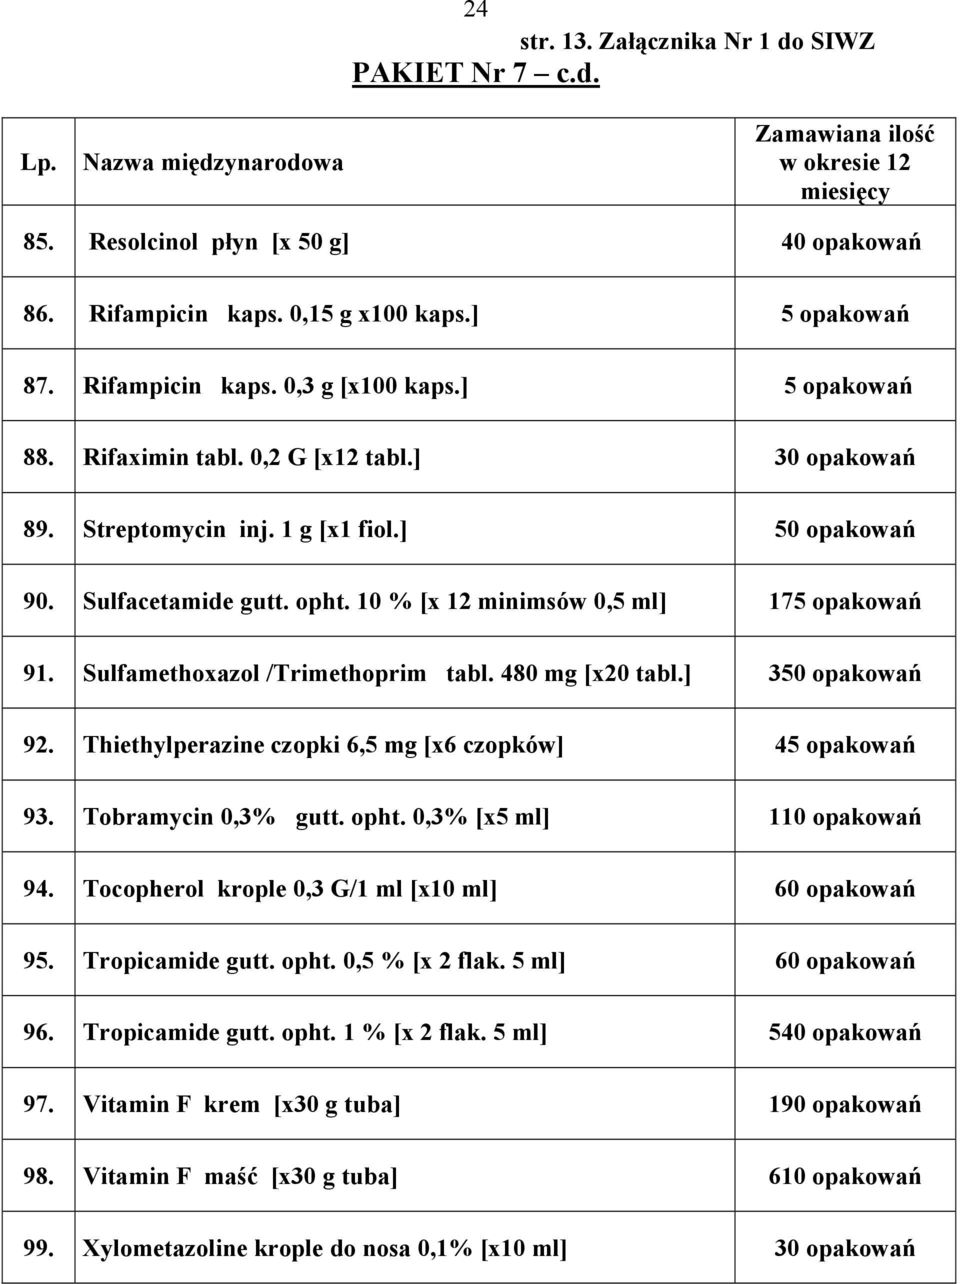 Sulfamethoxazol /Trimethoprim tabl. 480 mg [x20 tabl.] 350 opakowań 92. Thiethylperazine czopki 6,5 mg [x6 czopków] 45 opakowań 93. Tobramycin 0,3% gutt. opht. 0,3% [x5 ml] 110 opakowań 94.